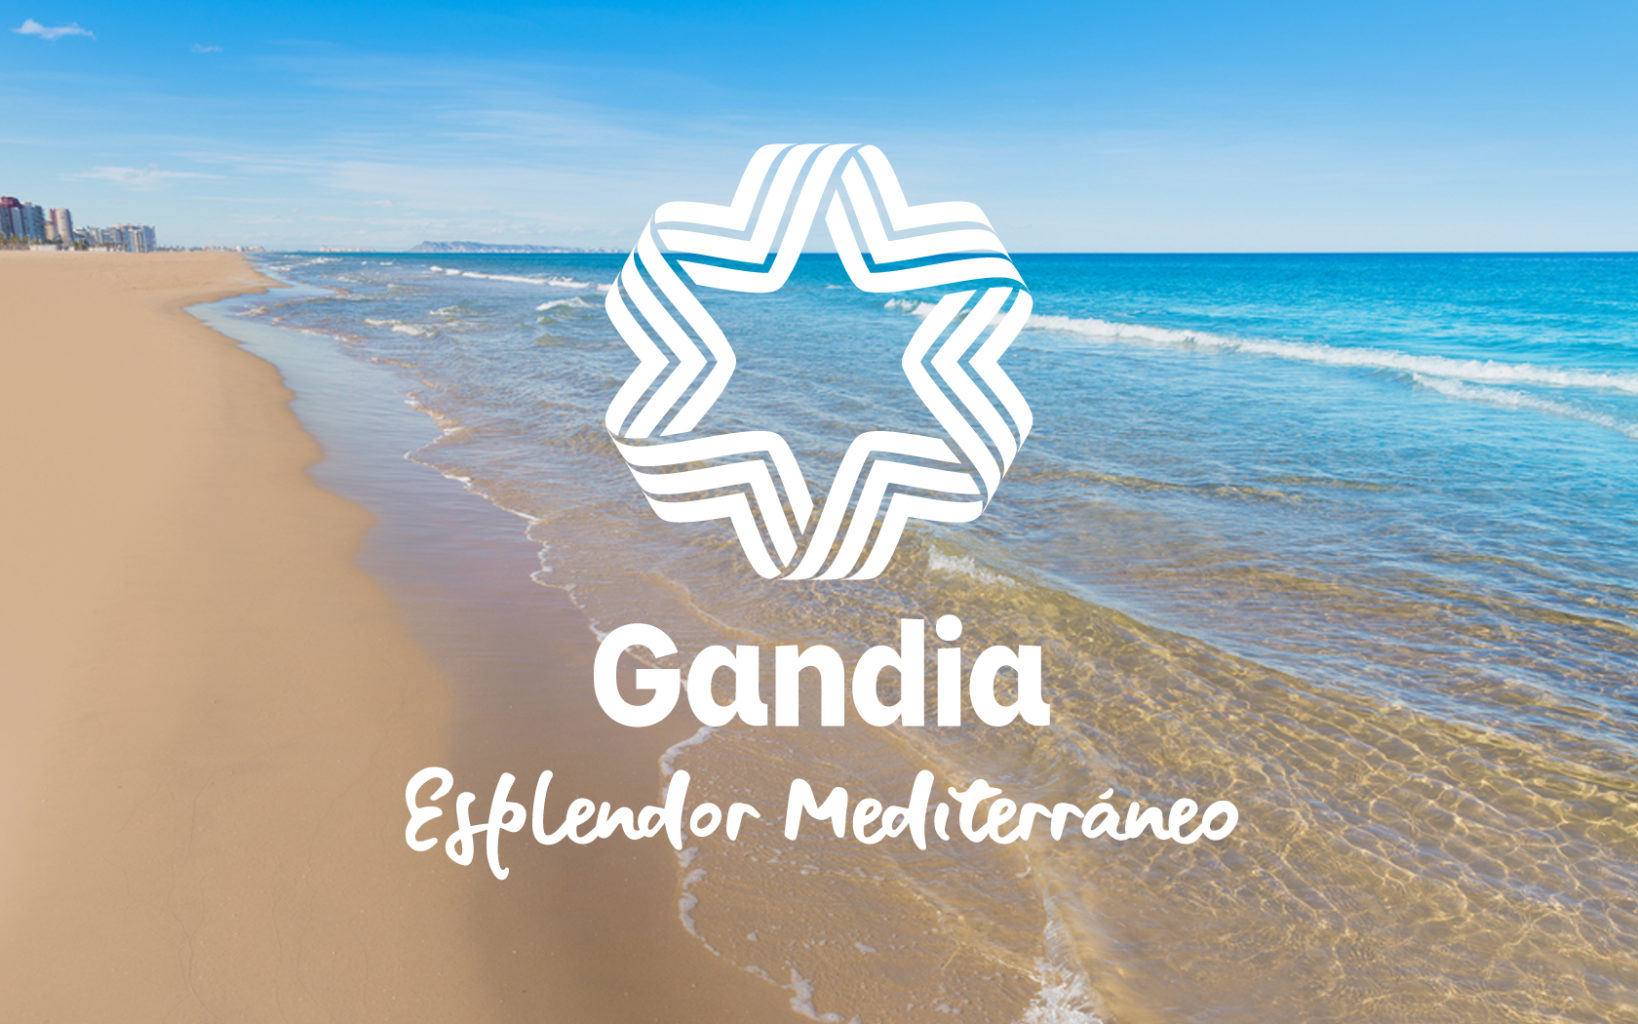 Gandia: bienvenidos a la playa del futuro